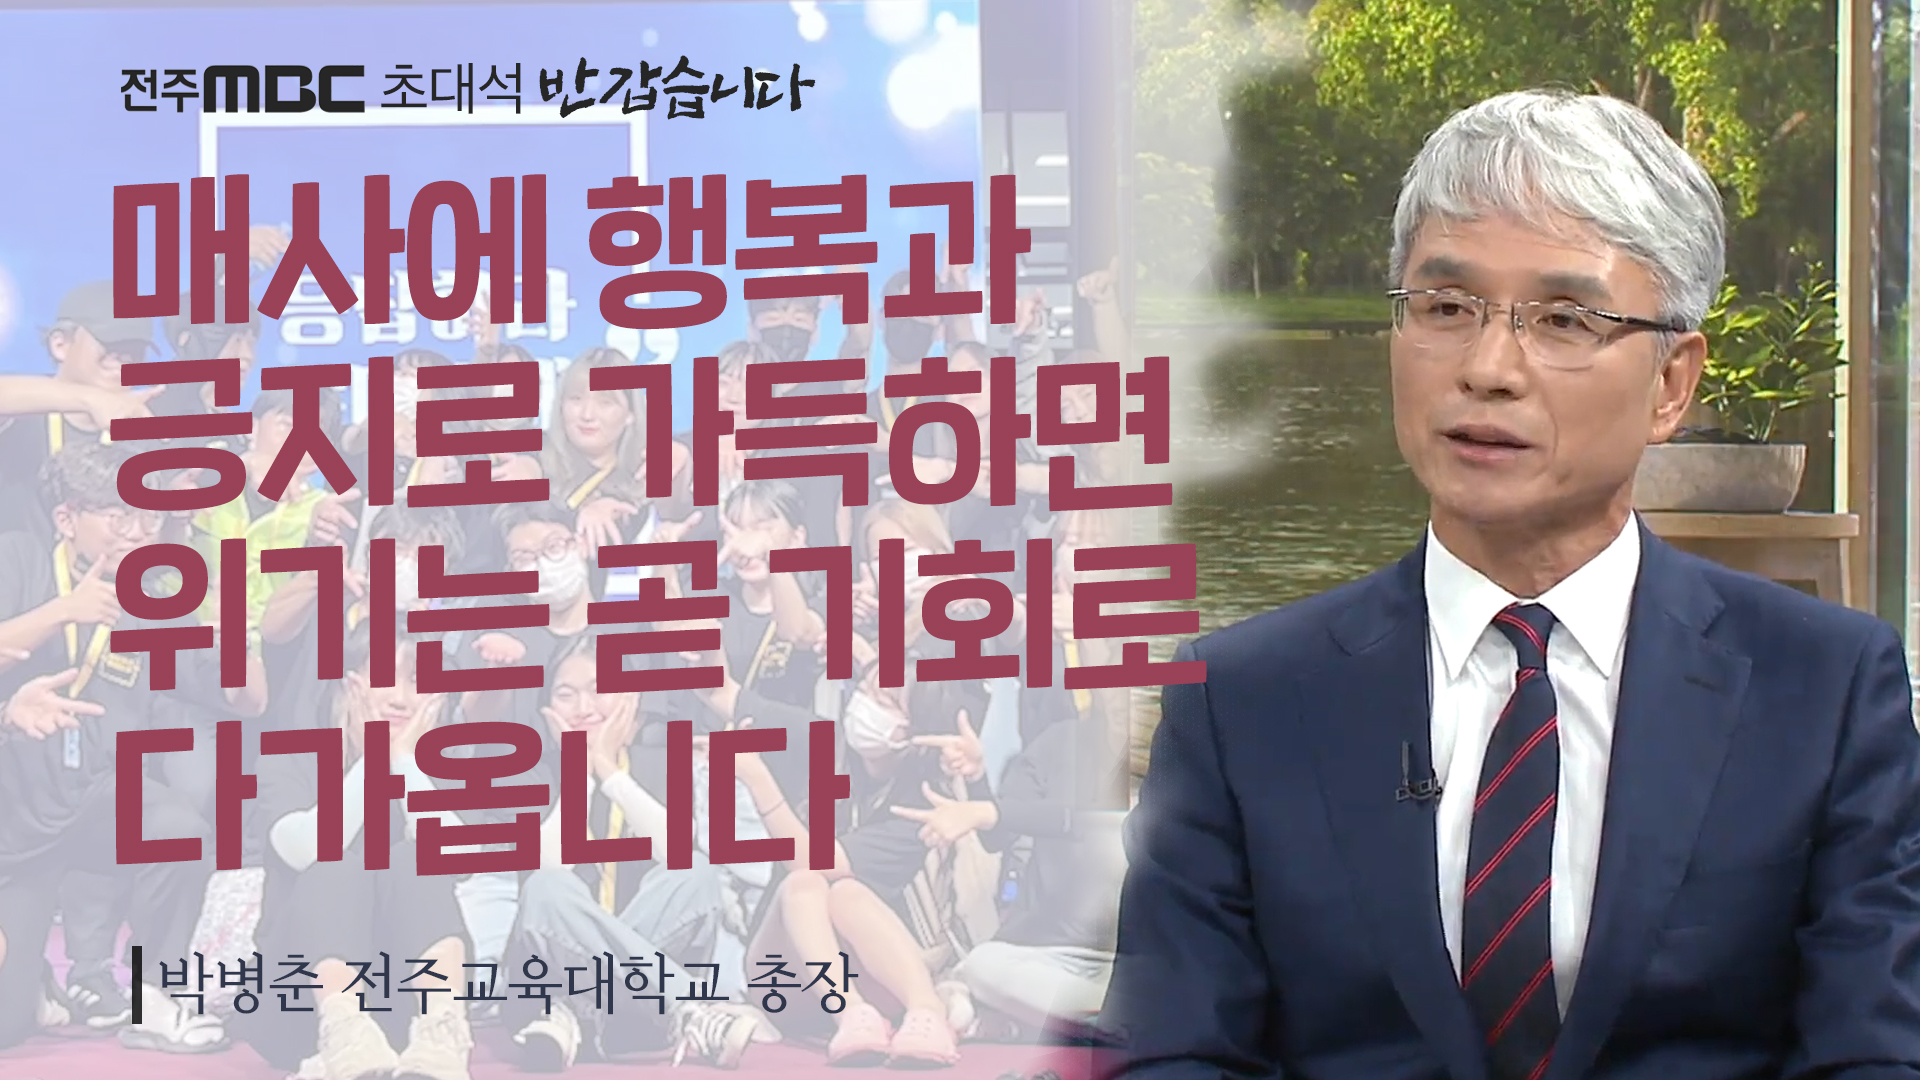 박병춘 전주교육대학교 총장